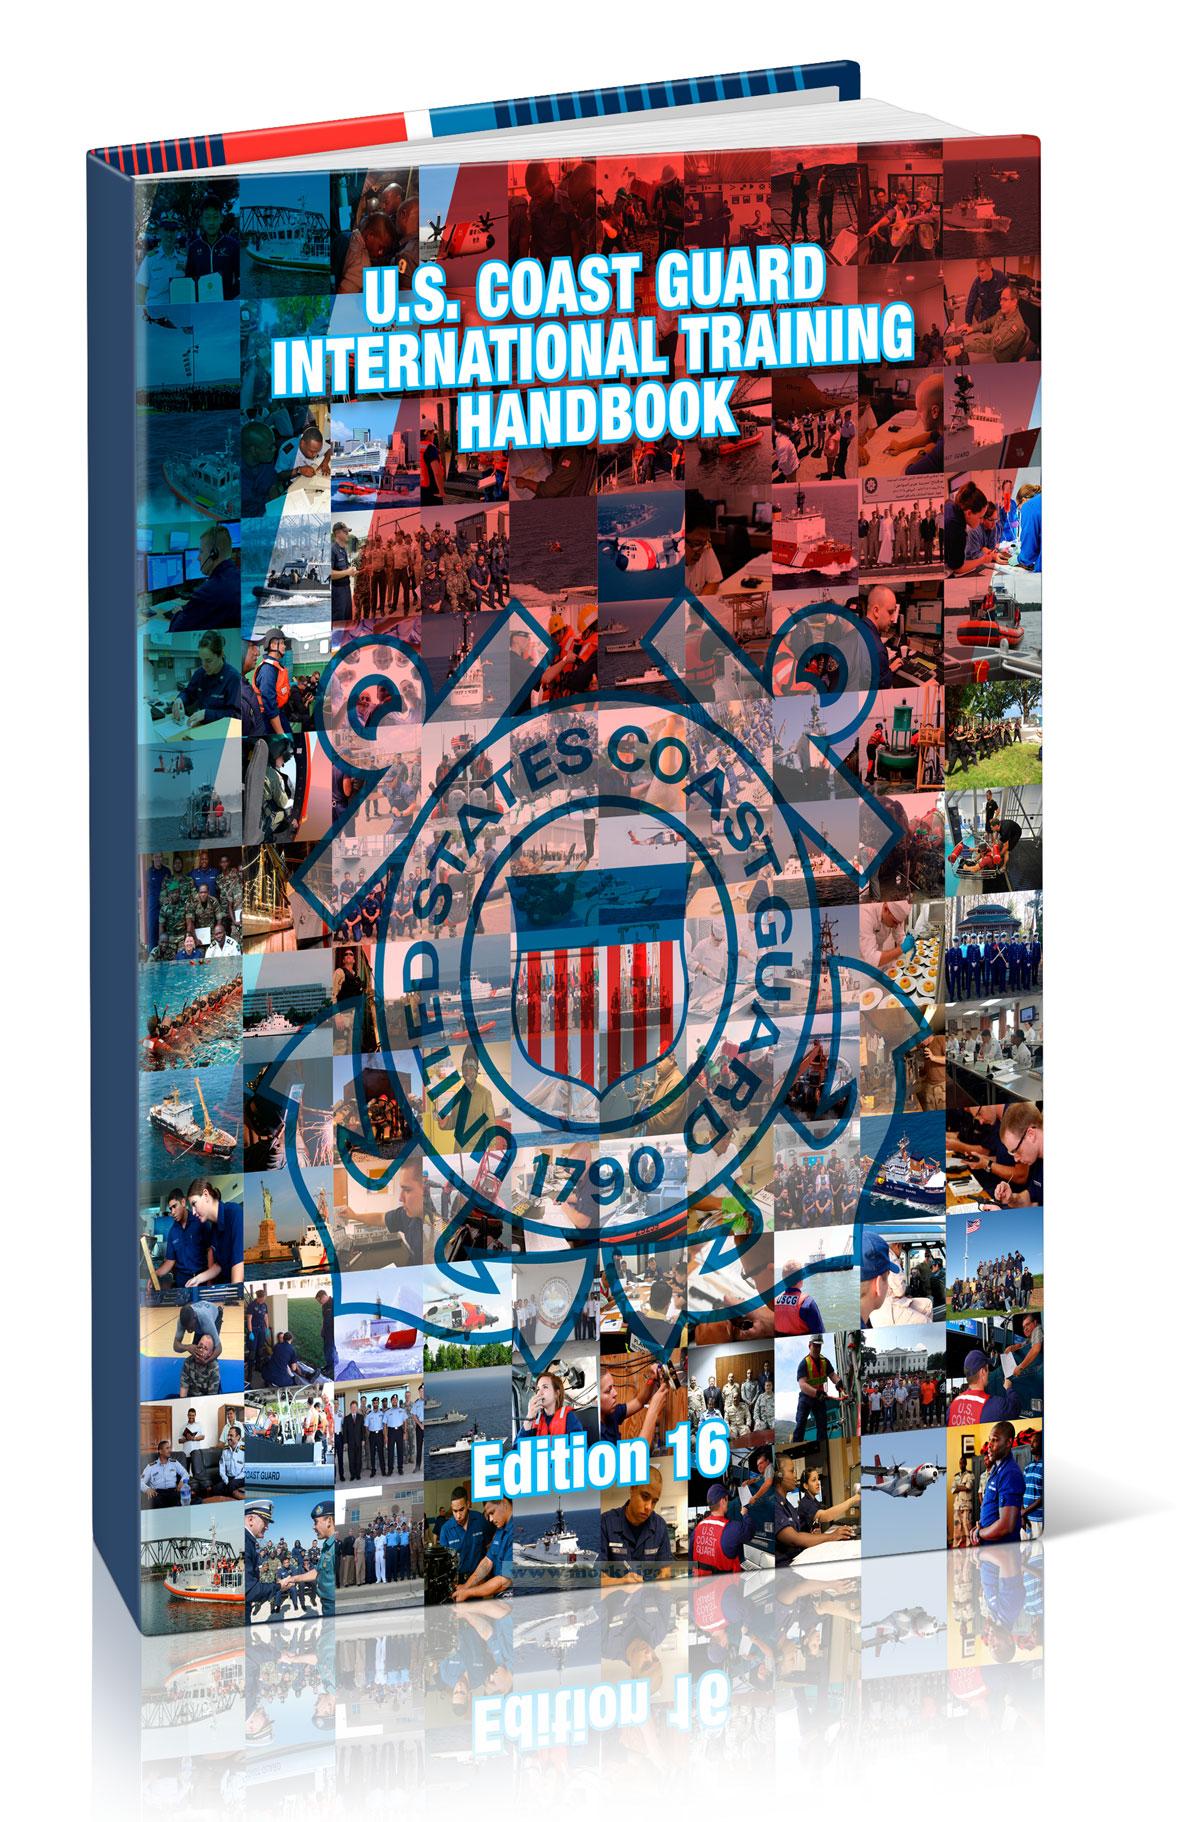 U.S. Coast Guard International Training Handbook Ed. 16/Международное учебное пособие для береговой охраны по образцу береговой охраны США